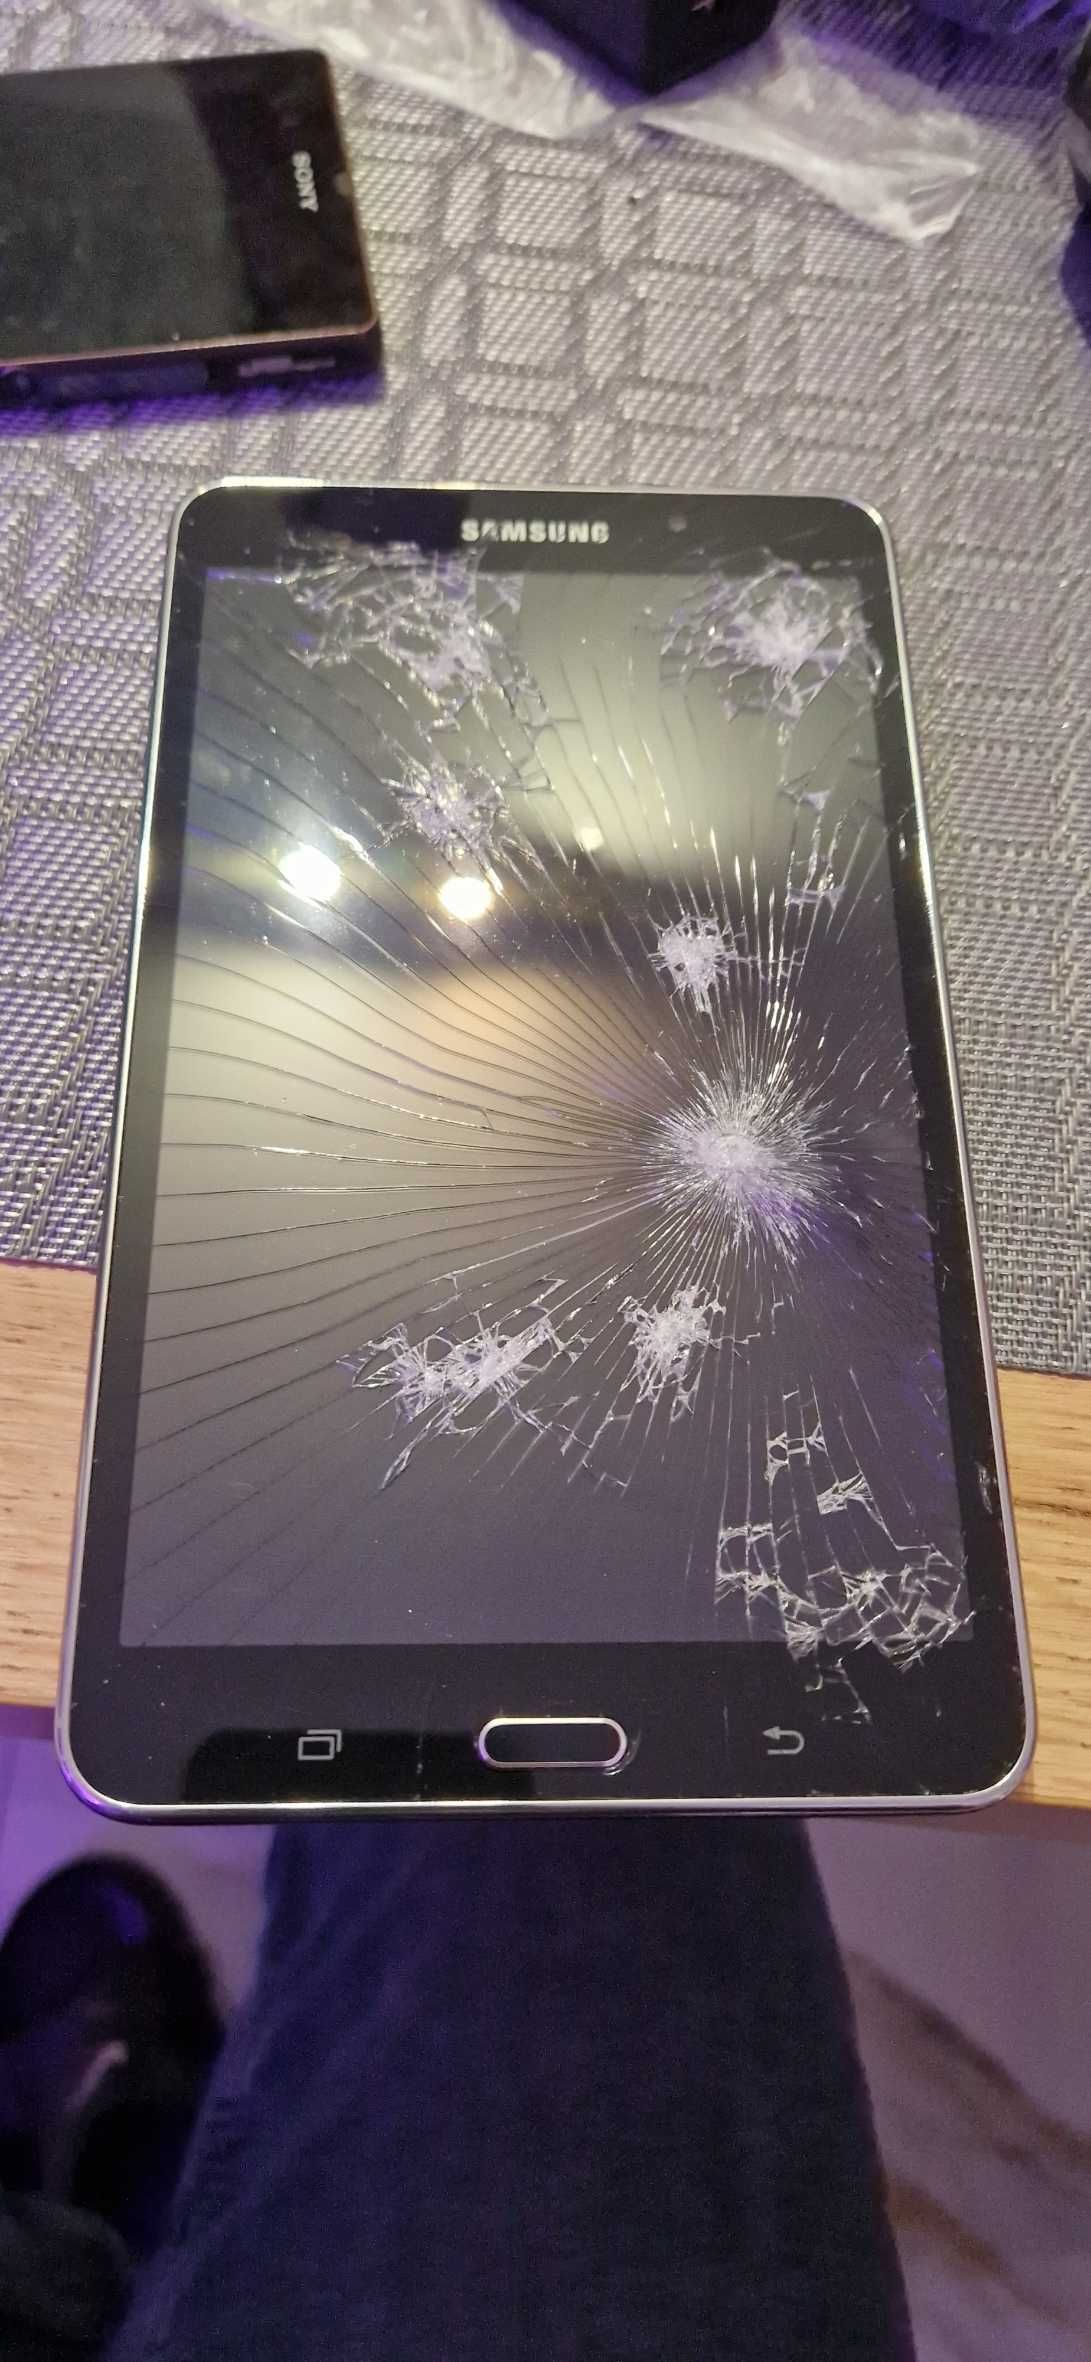 telefony - samsung galaxy uszkodzony zestaw smartfonów